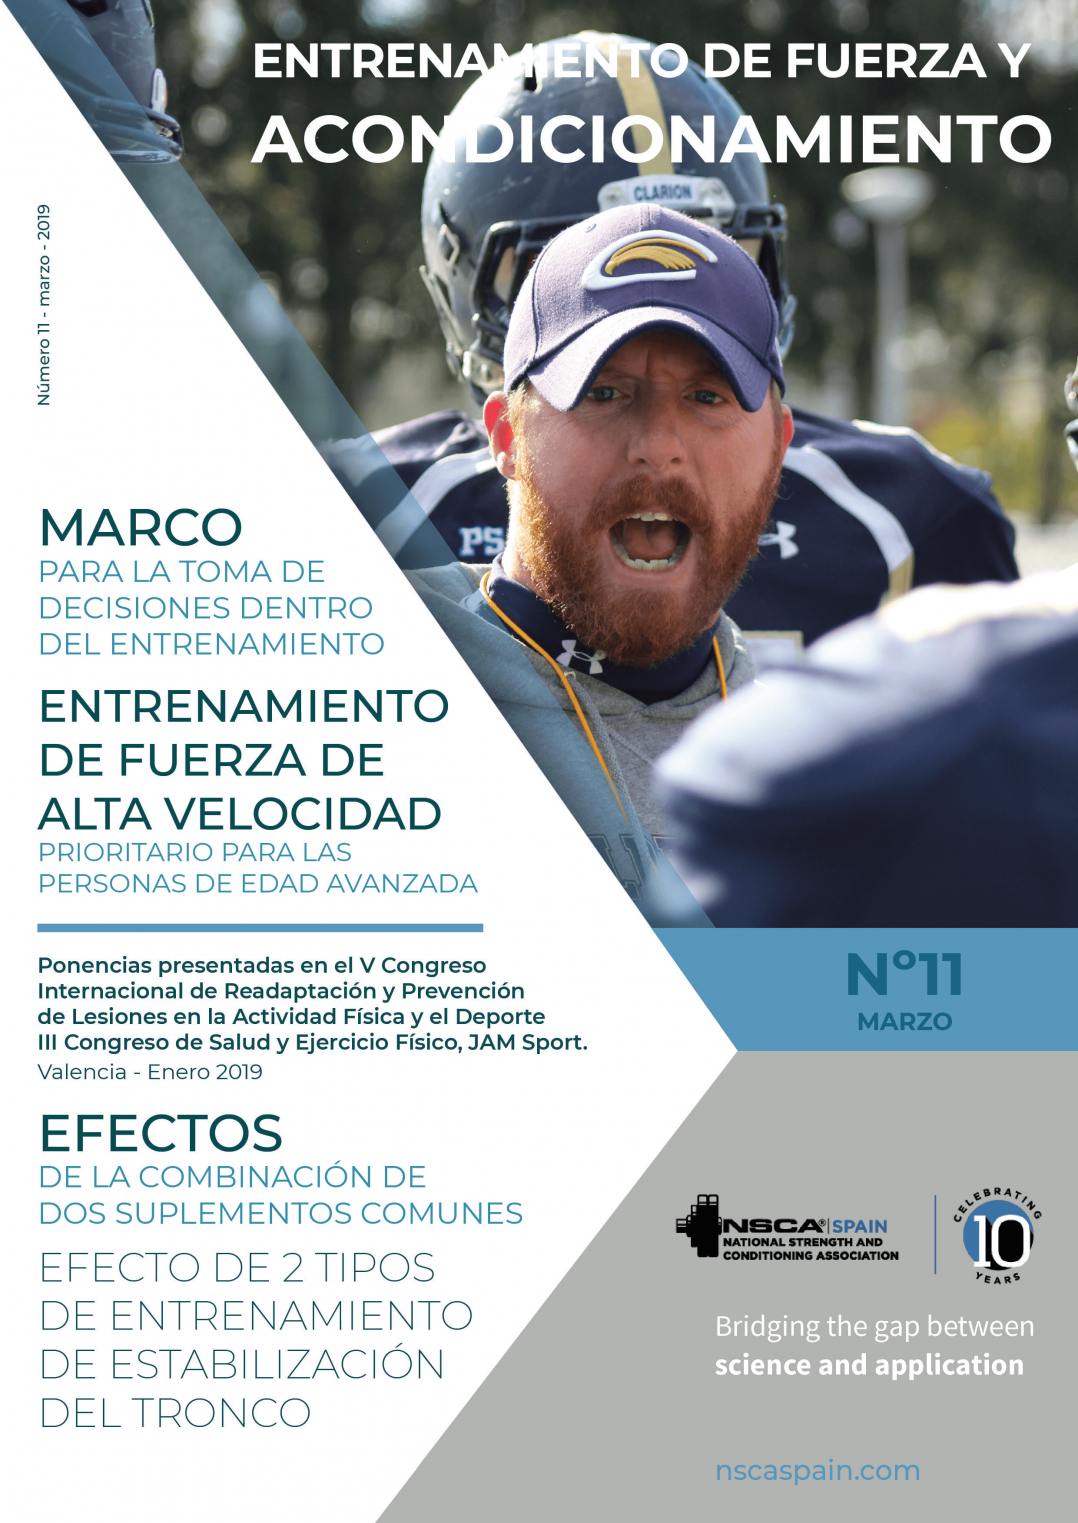 Nº 11 Journal NSCA Spain: Entrenamiento de fuerza y acondicionamiento físico - Marzo 2019